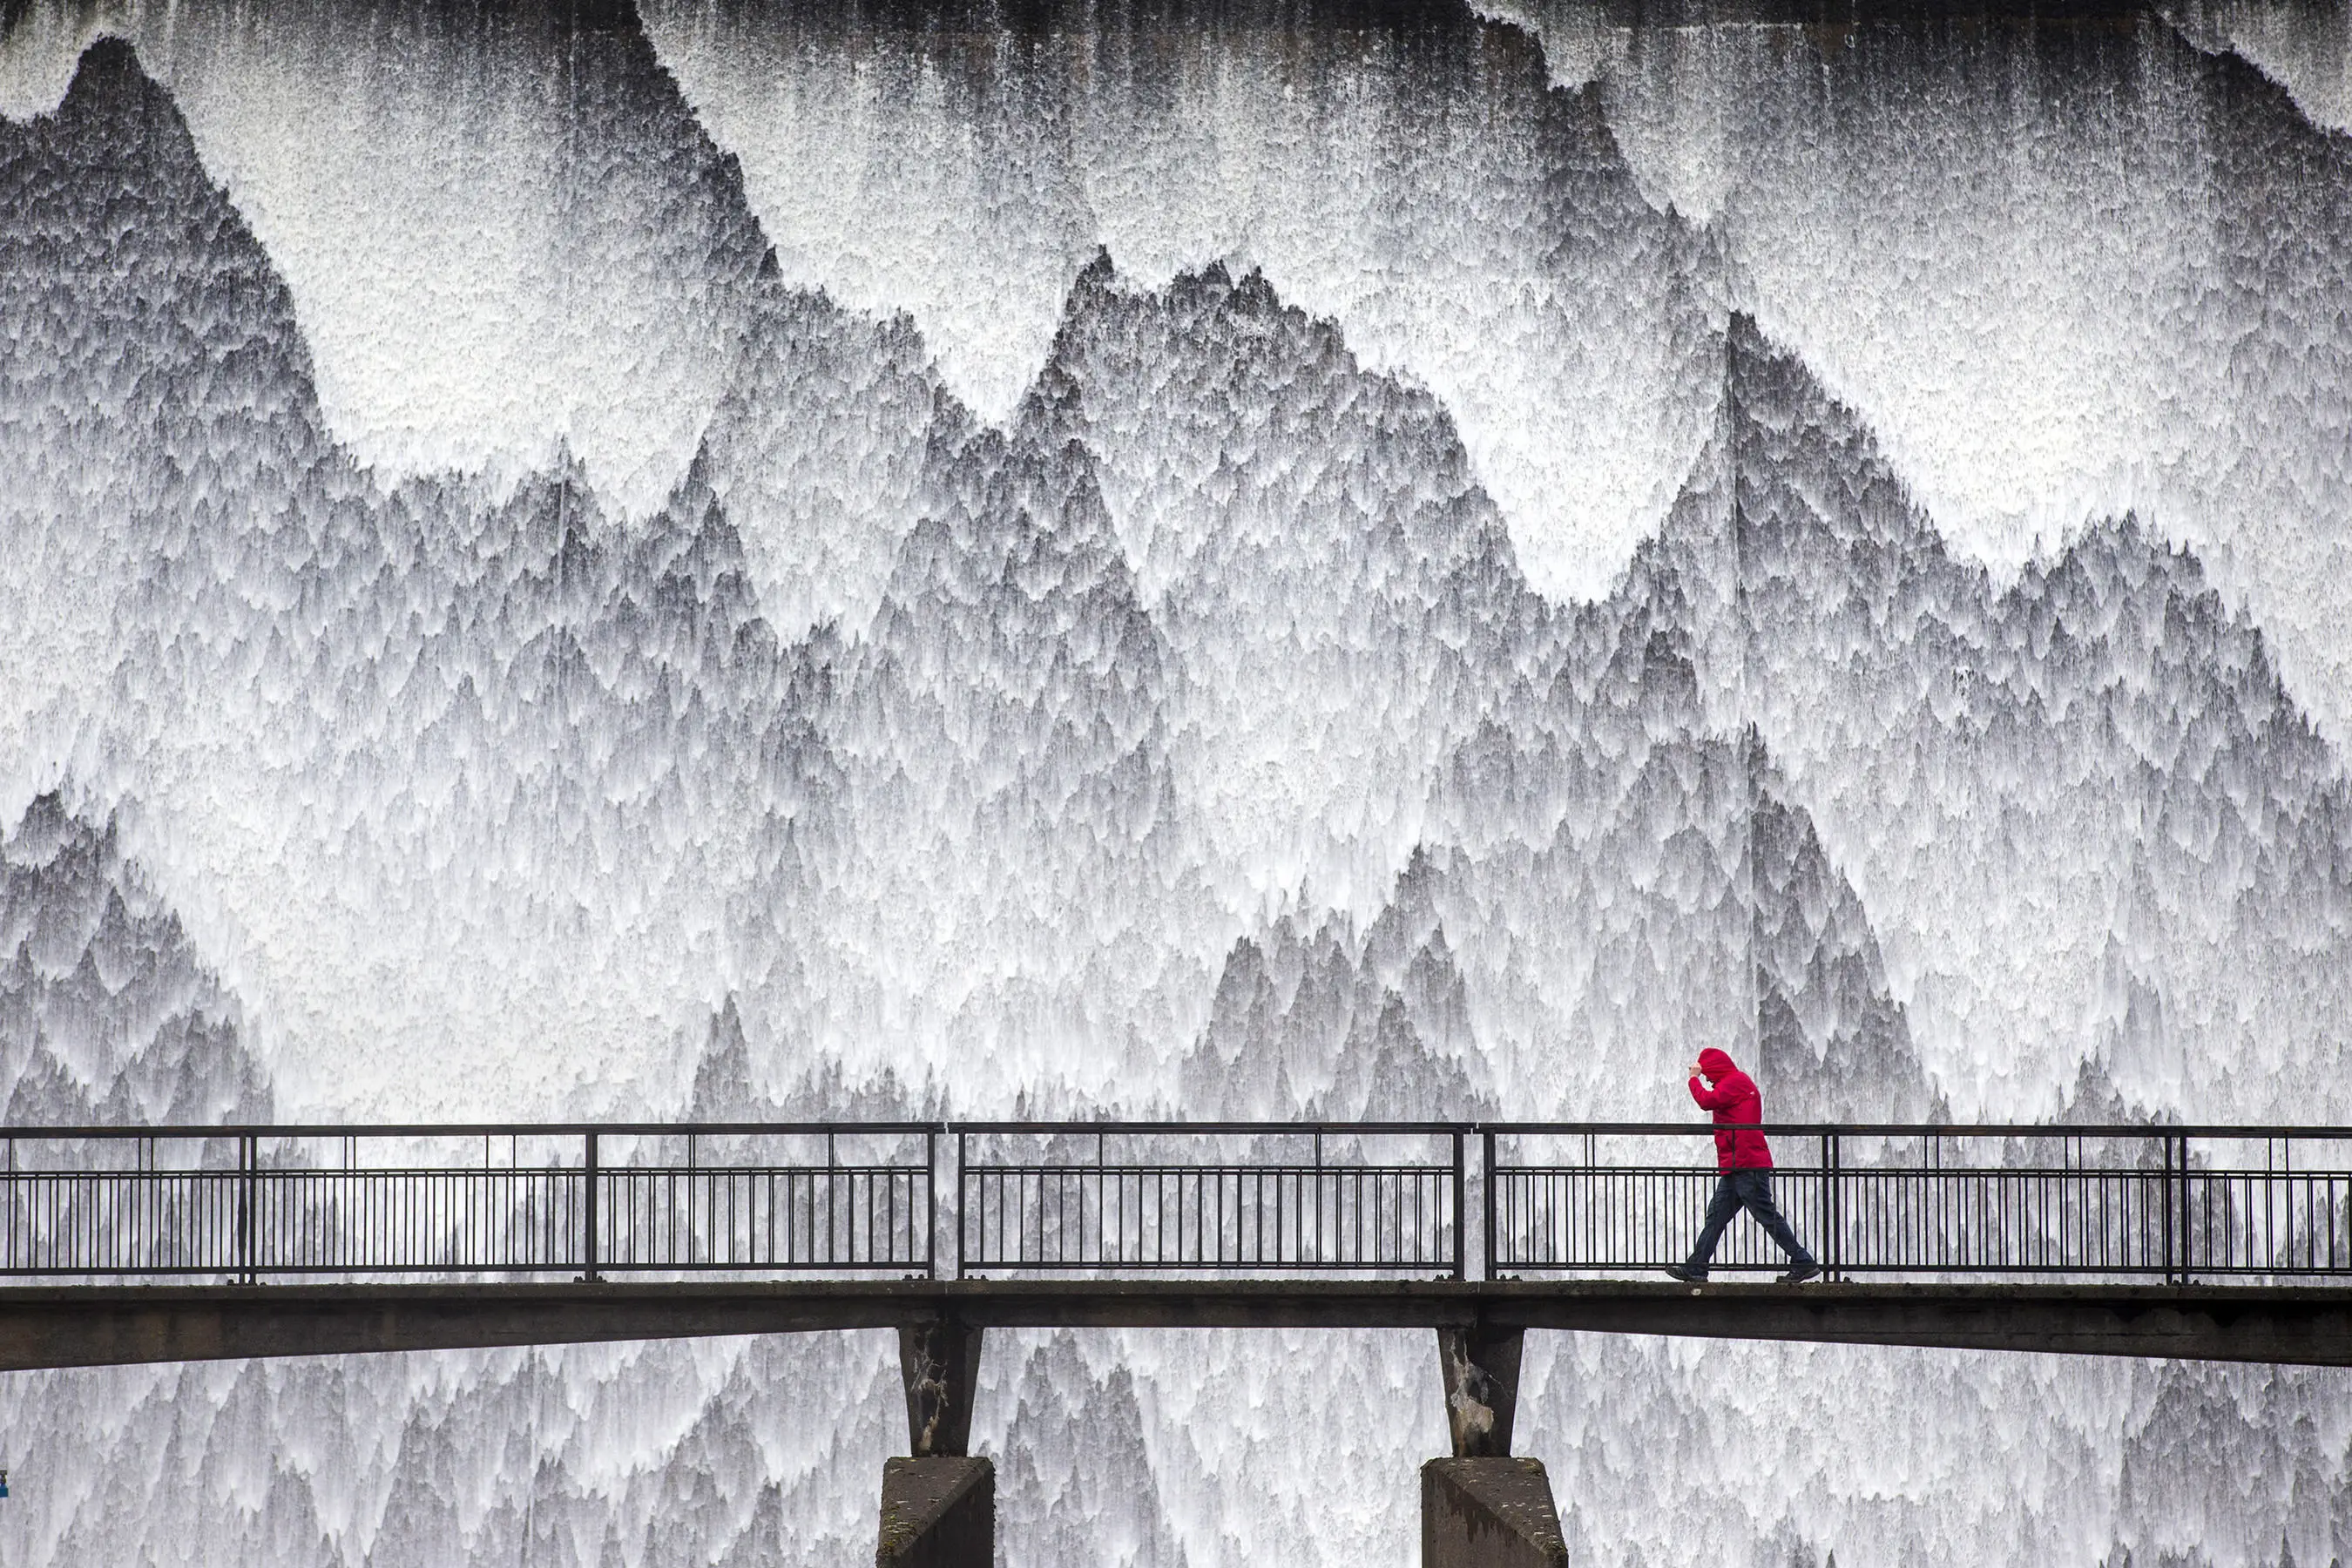 L'eau tombe en cascade sur le mur du barrage du réservoir de Wet Sleddale près de Cumbria, au Royaume-Uni, après une période de fortes pluies. Le photographe Andrew McCaren écrit : 